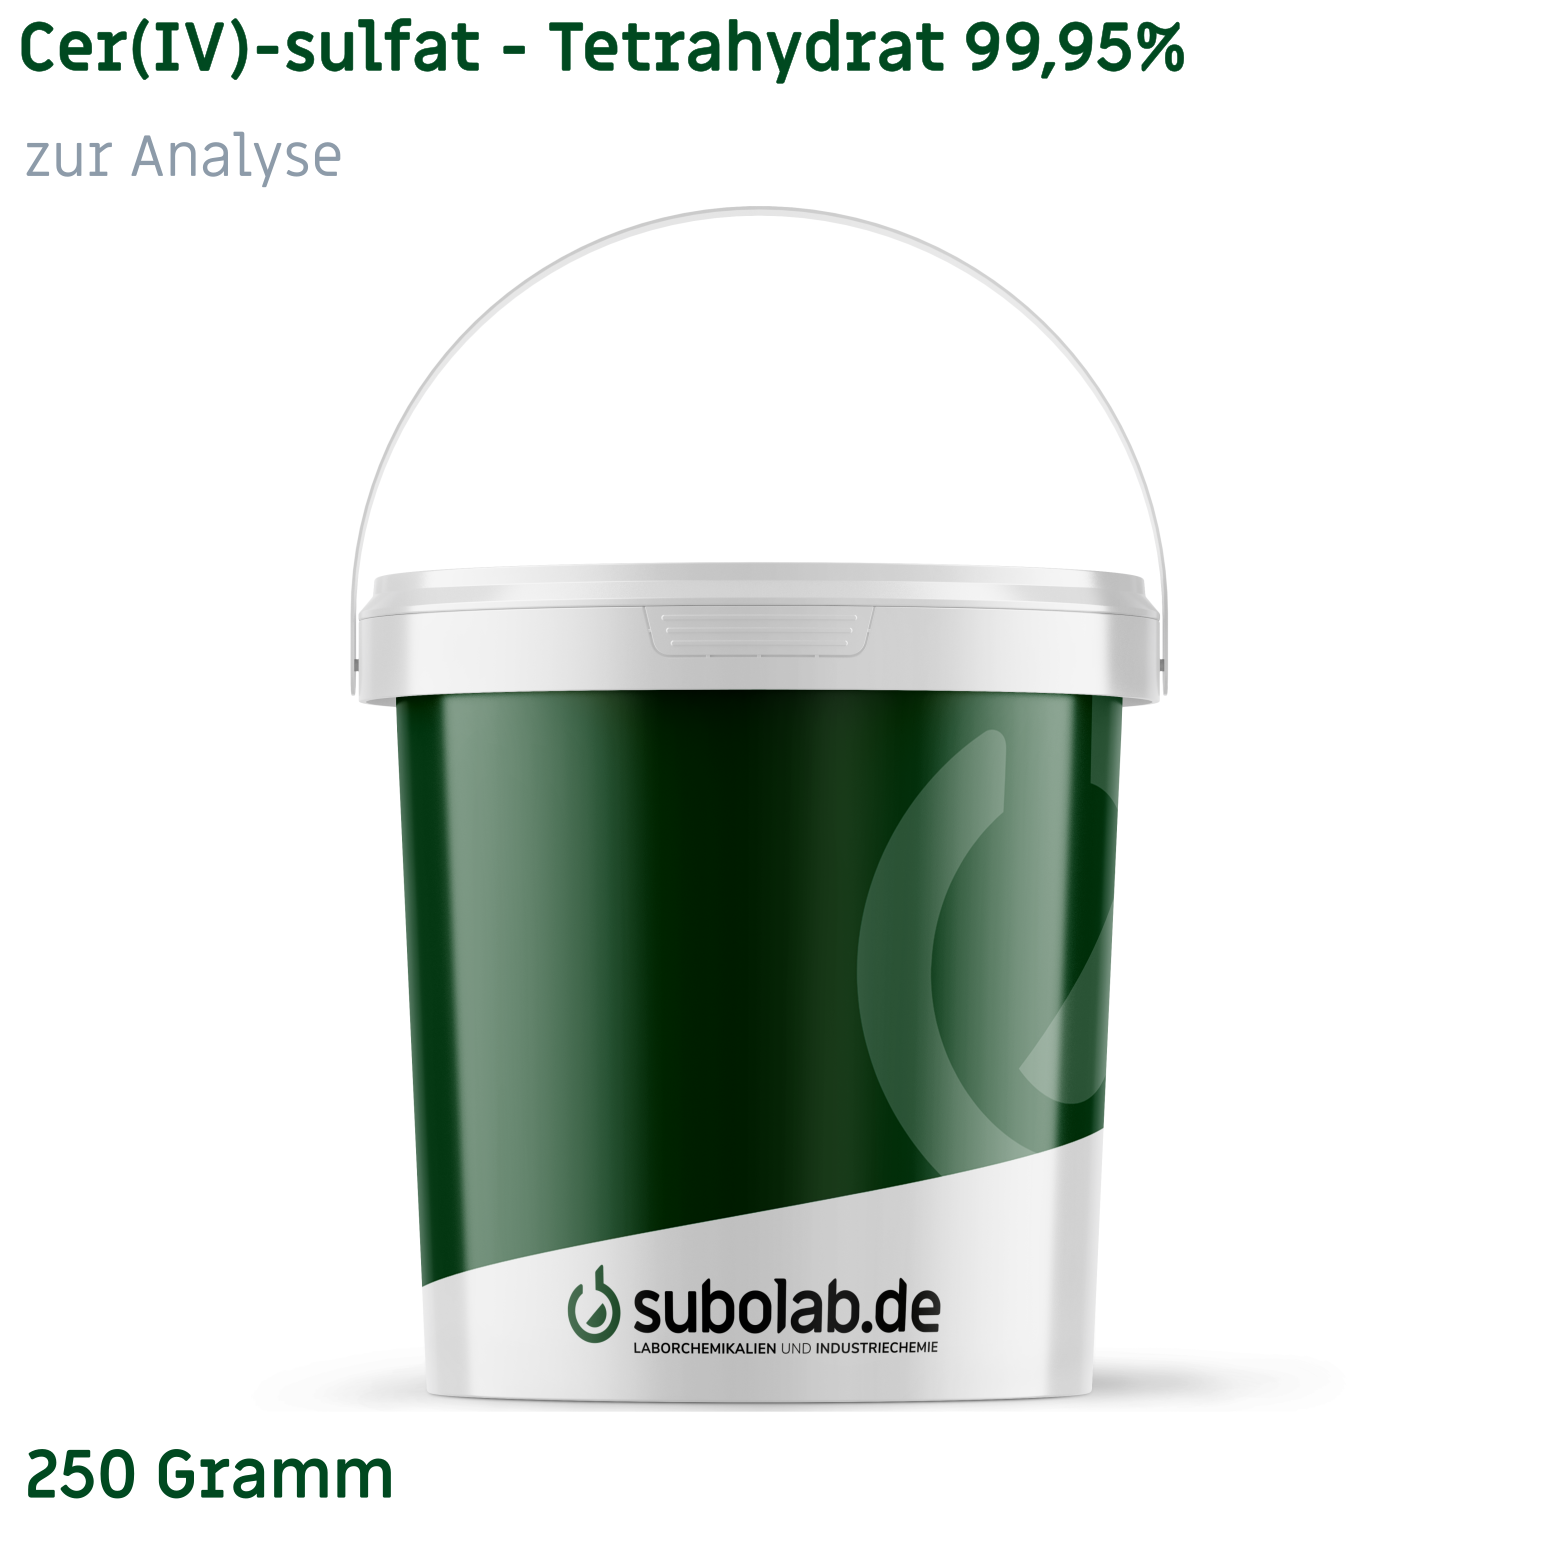 Bild von Cer(IV)-sulfat - Tetrahydrat 99,95% zur Analyse (250 Gramm)